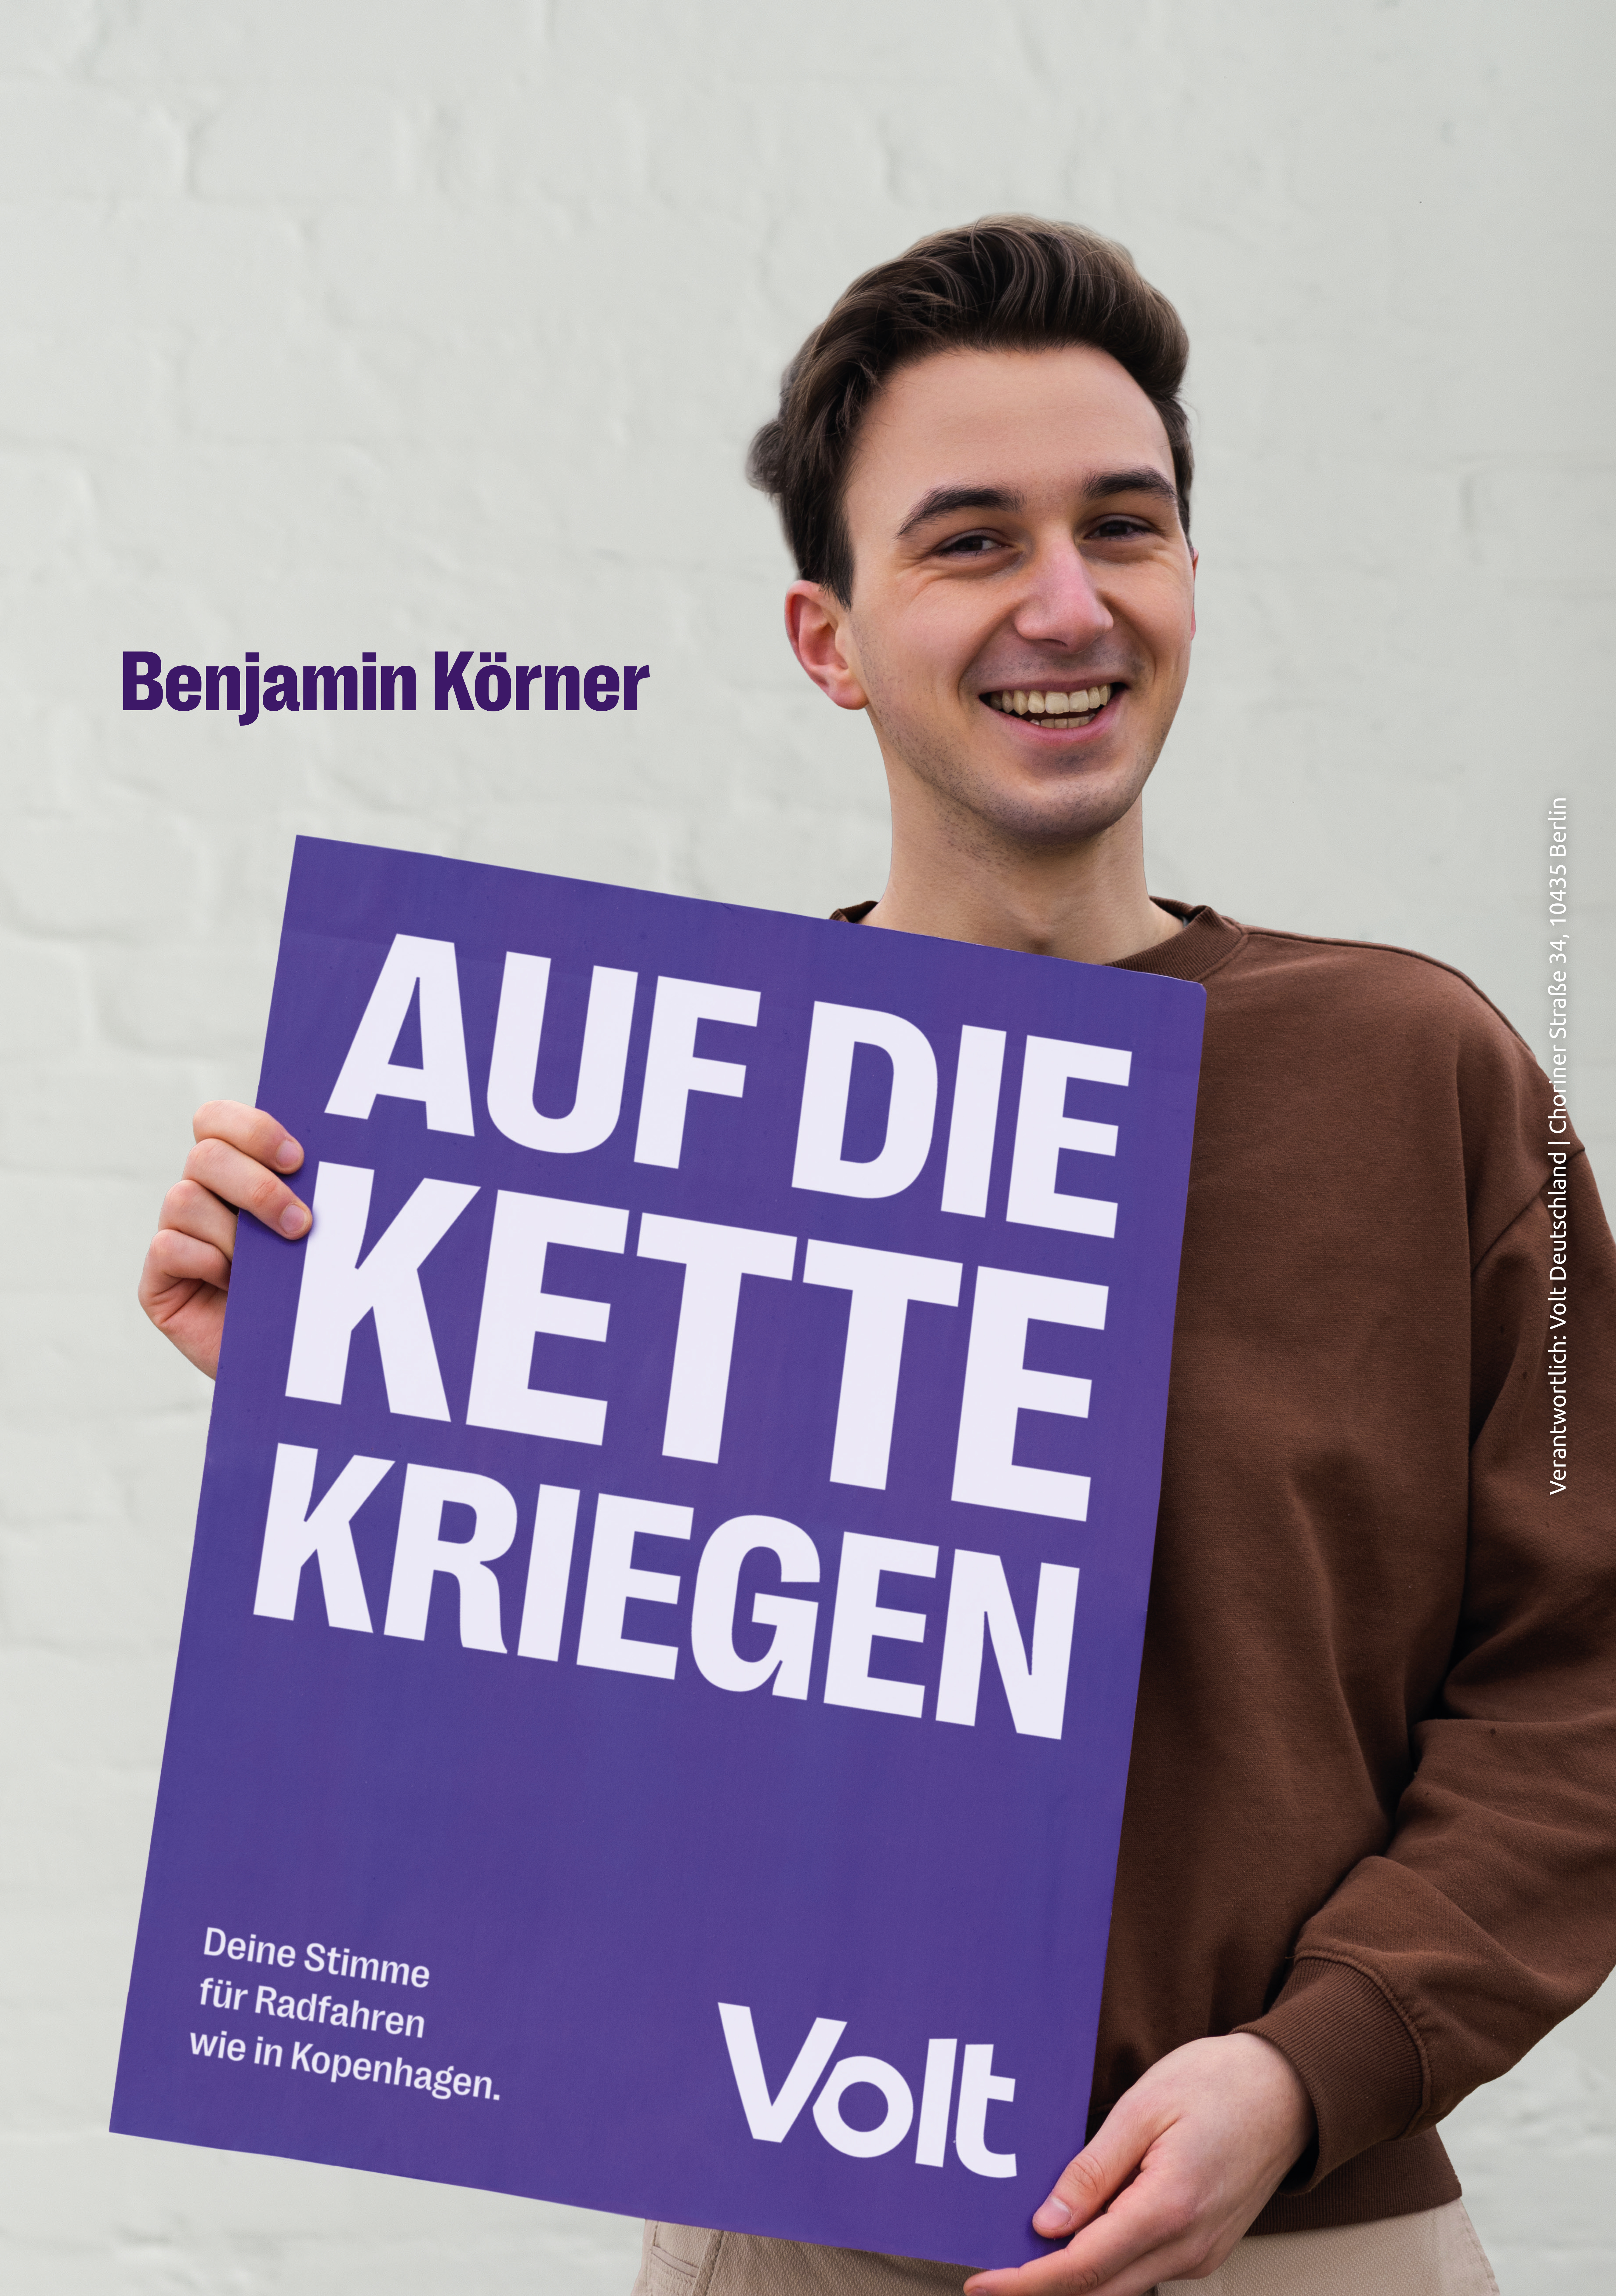 Benjamin Körner hält ein Plakat mit dem Spruch "Auf die Kette kriegen". Als Erklärung steht darunter "Deine Stimme für Radfahren wie in Kopenhagen."